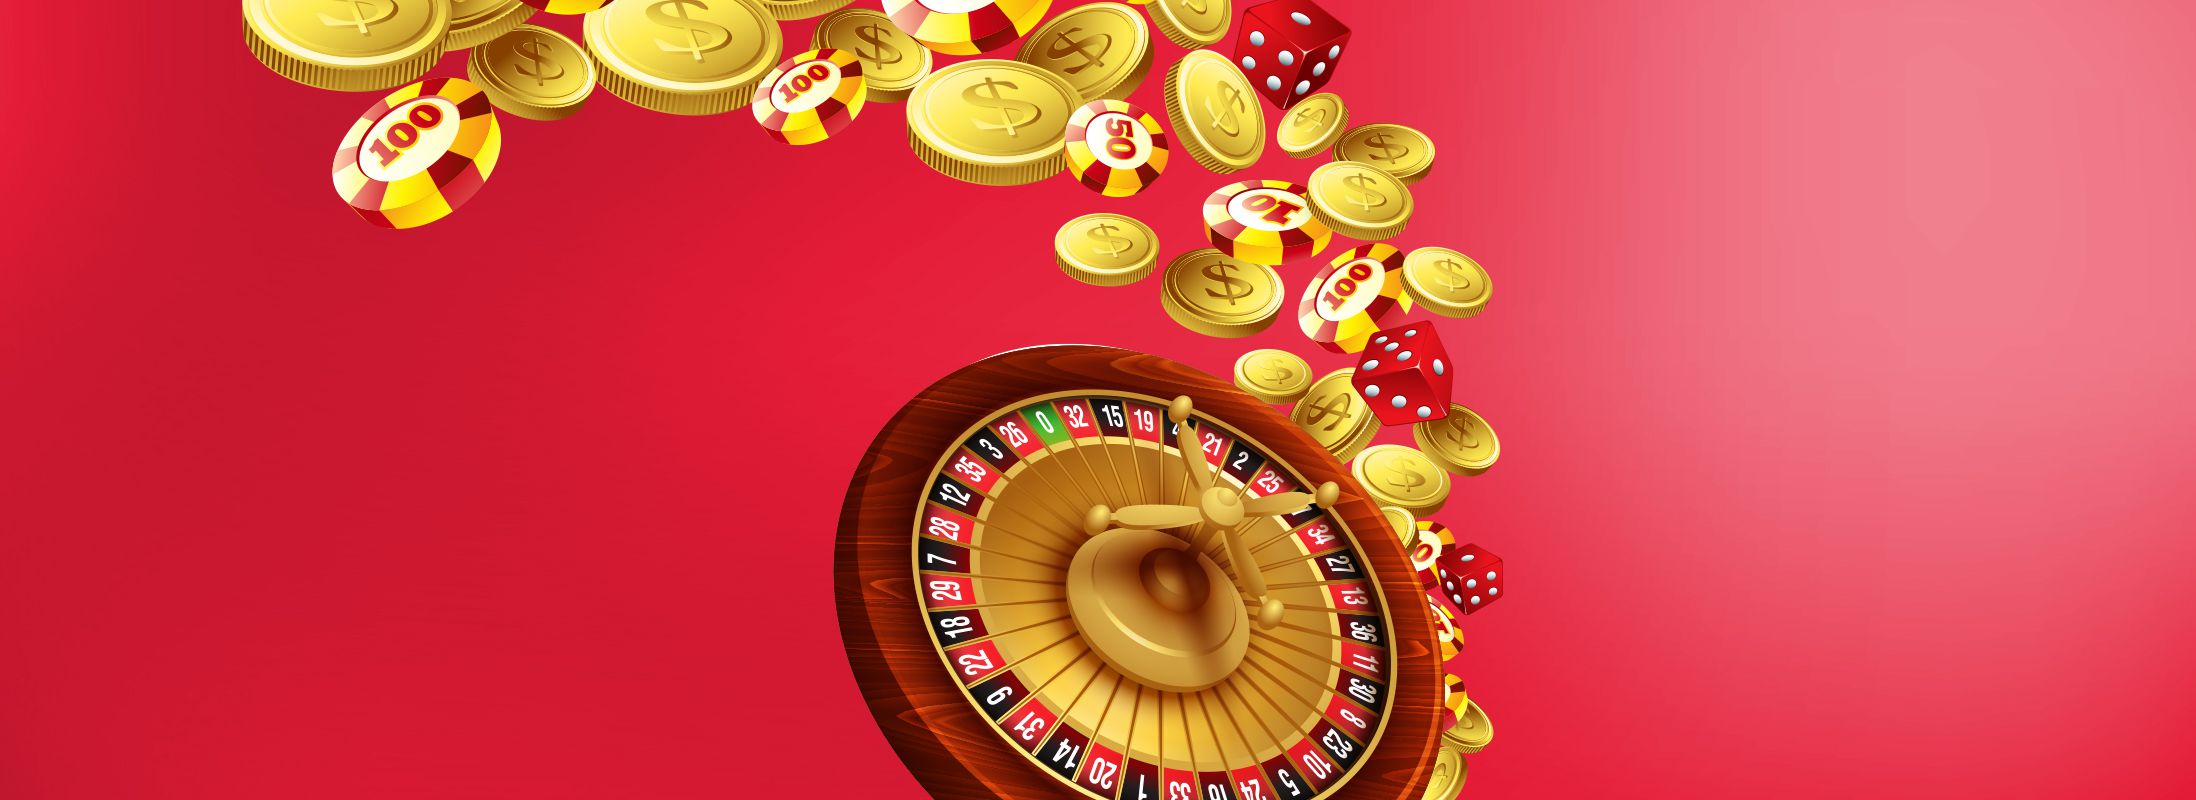 Виды бонусов в онлайн казино высокие ставки 2020 2 серия смотреть онлайн